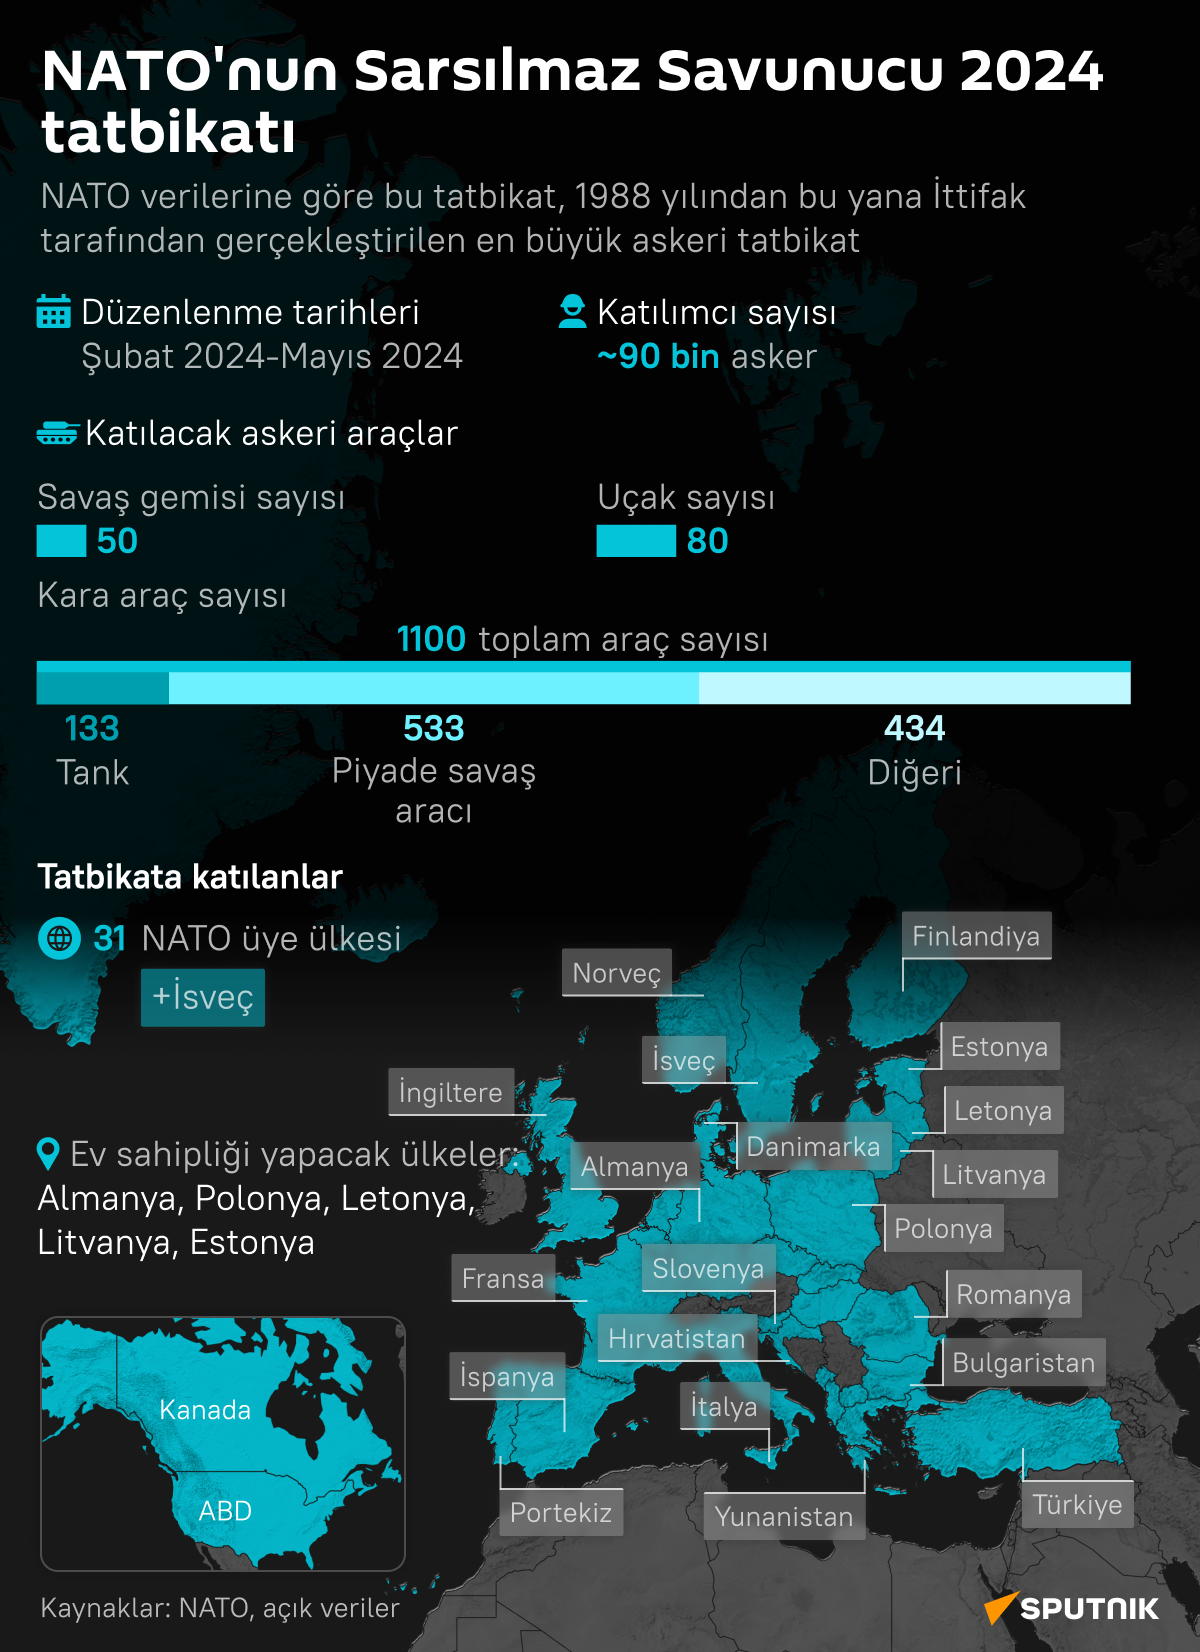  NATO'nun Soğuk Savaş dönemi sonrası en büyük askeri tatbikatı 'Sarsılmaz Savunucu 2024'   - Sputnik Türkiye